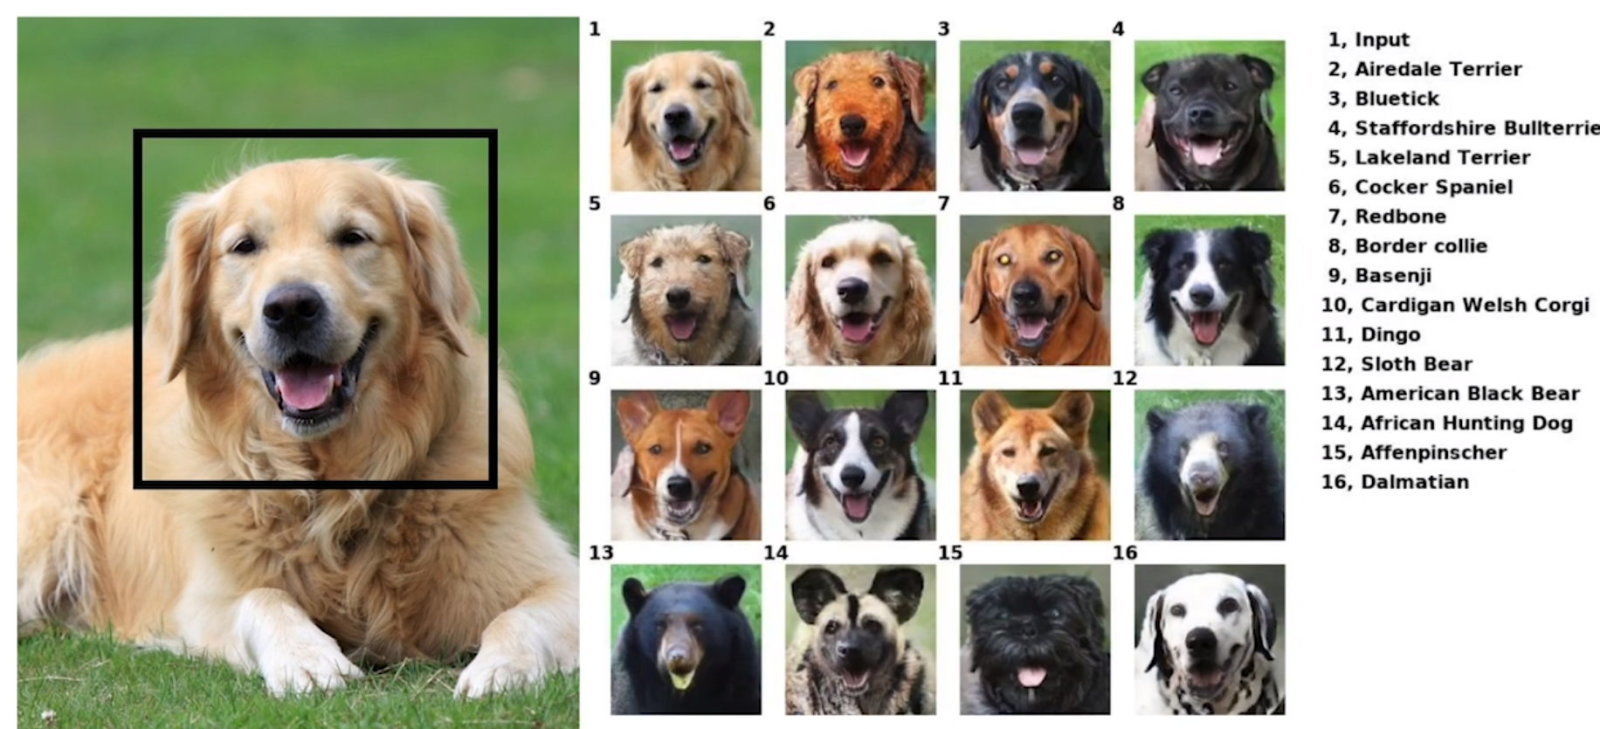 Nvidia、ペットの表情を他の動物画像に移植するAI技術を開発